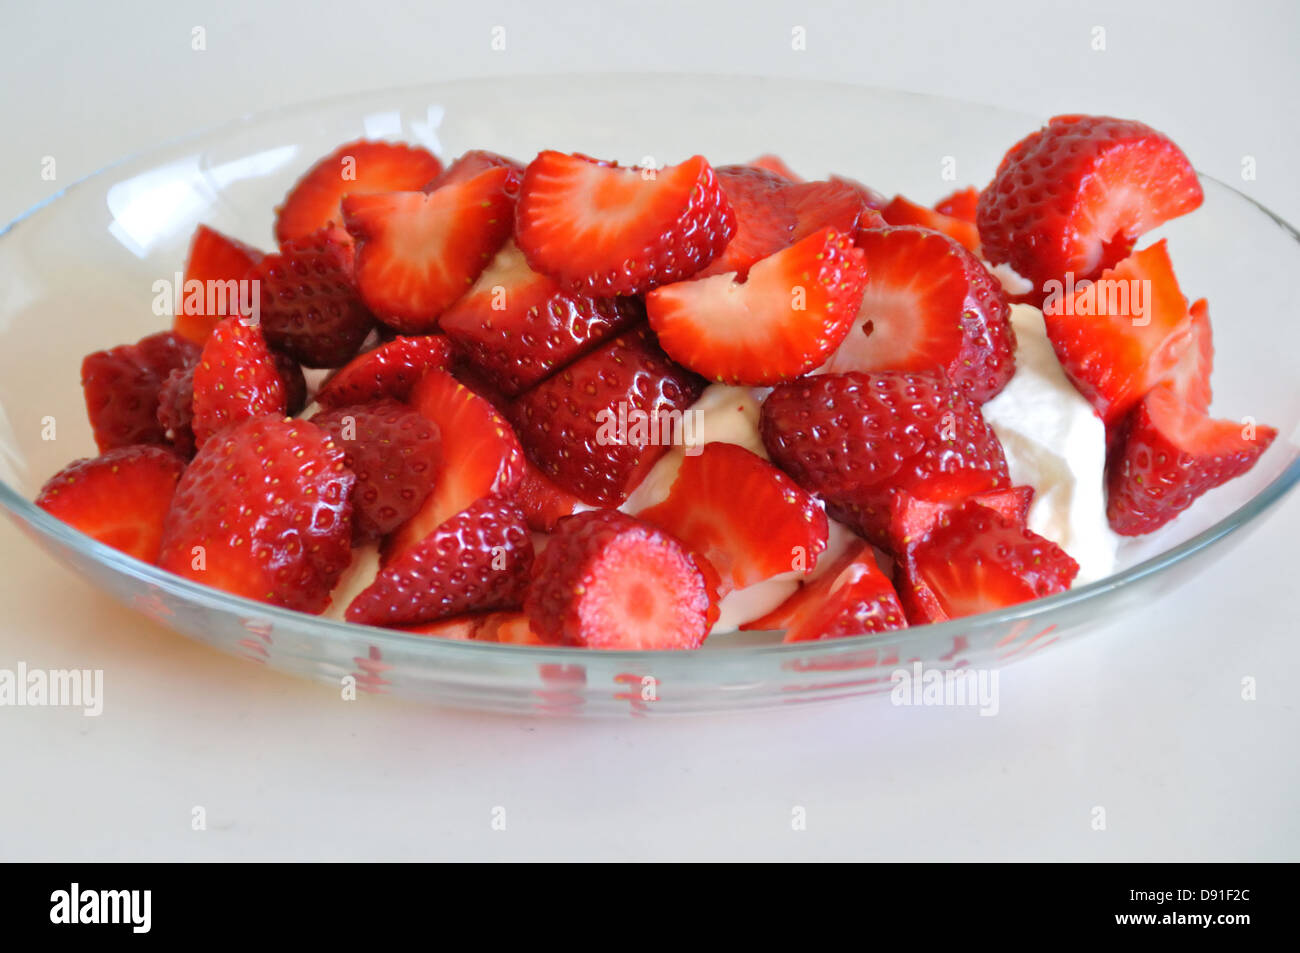 Fresh strawberries and yogurt dessert fruit background. Stock Photo